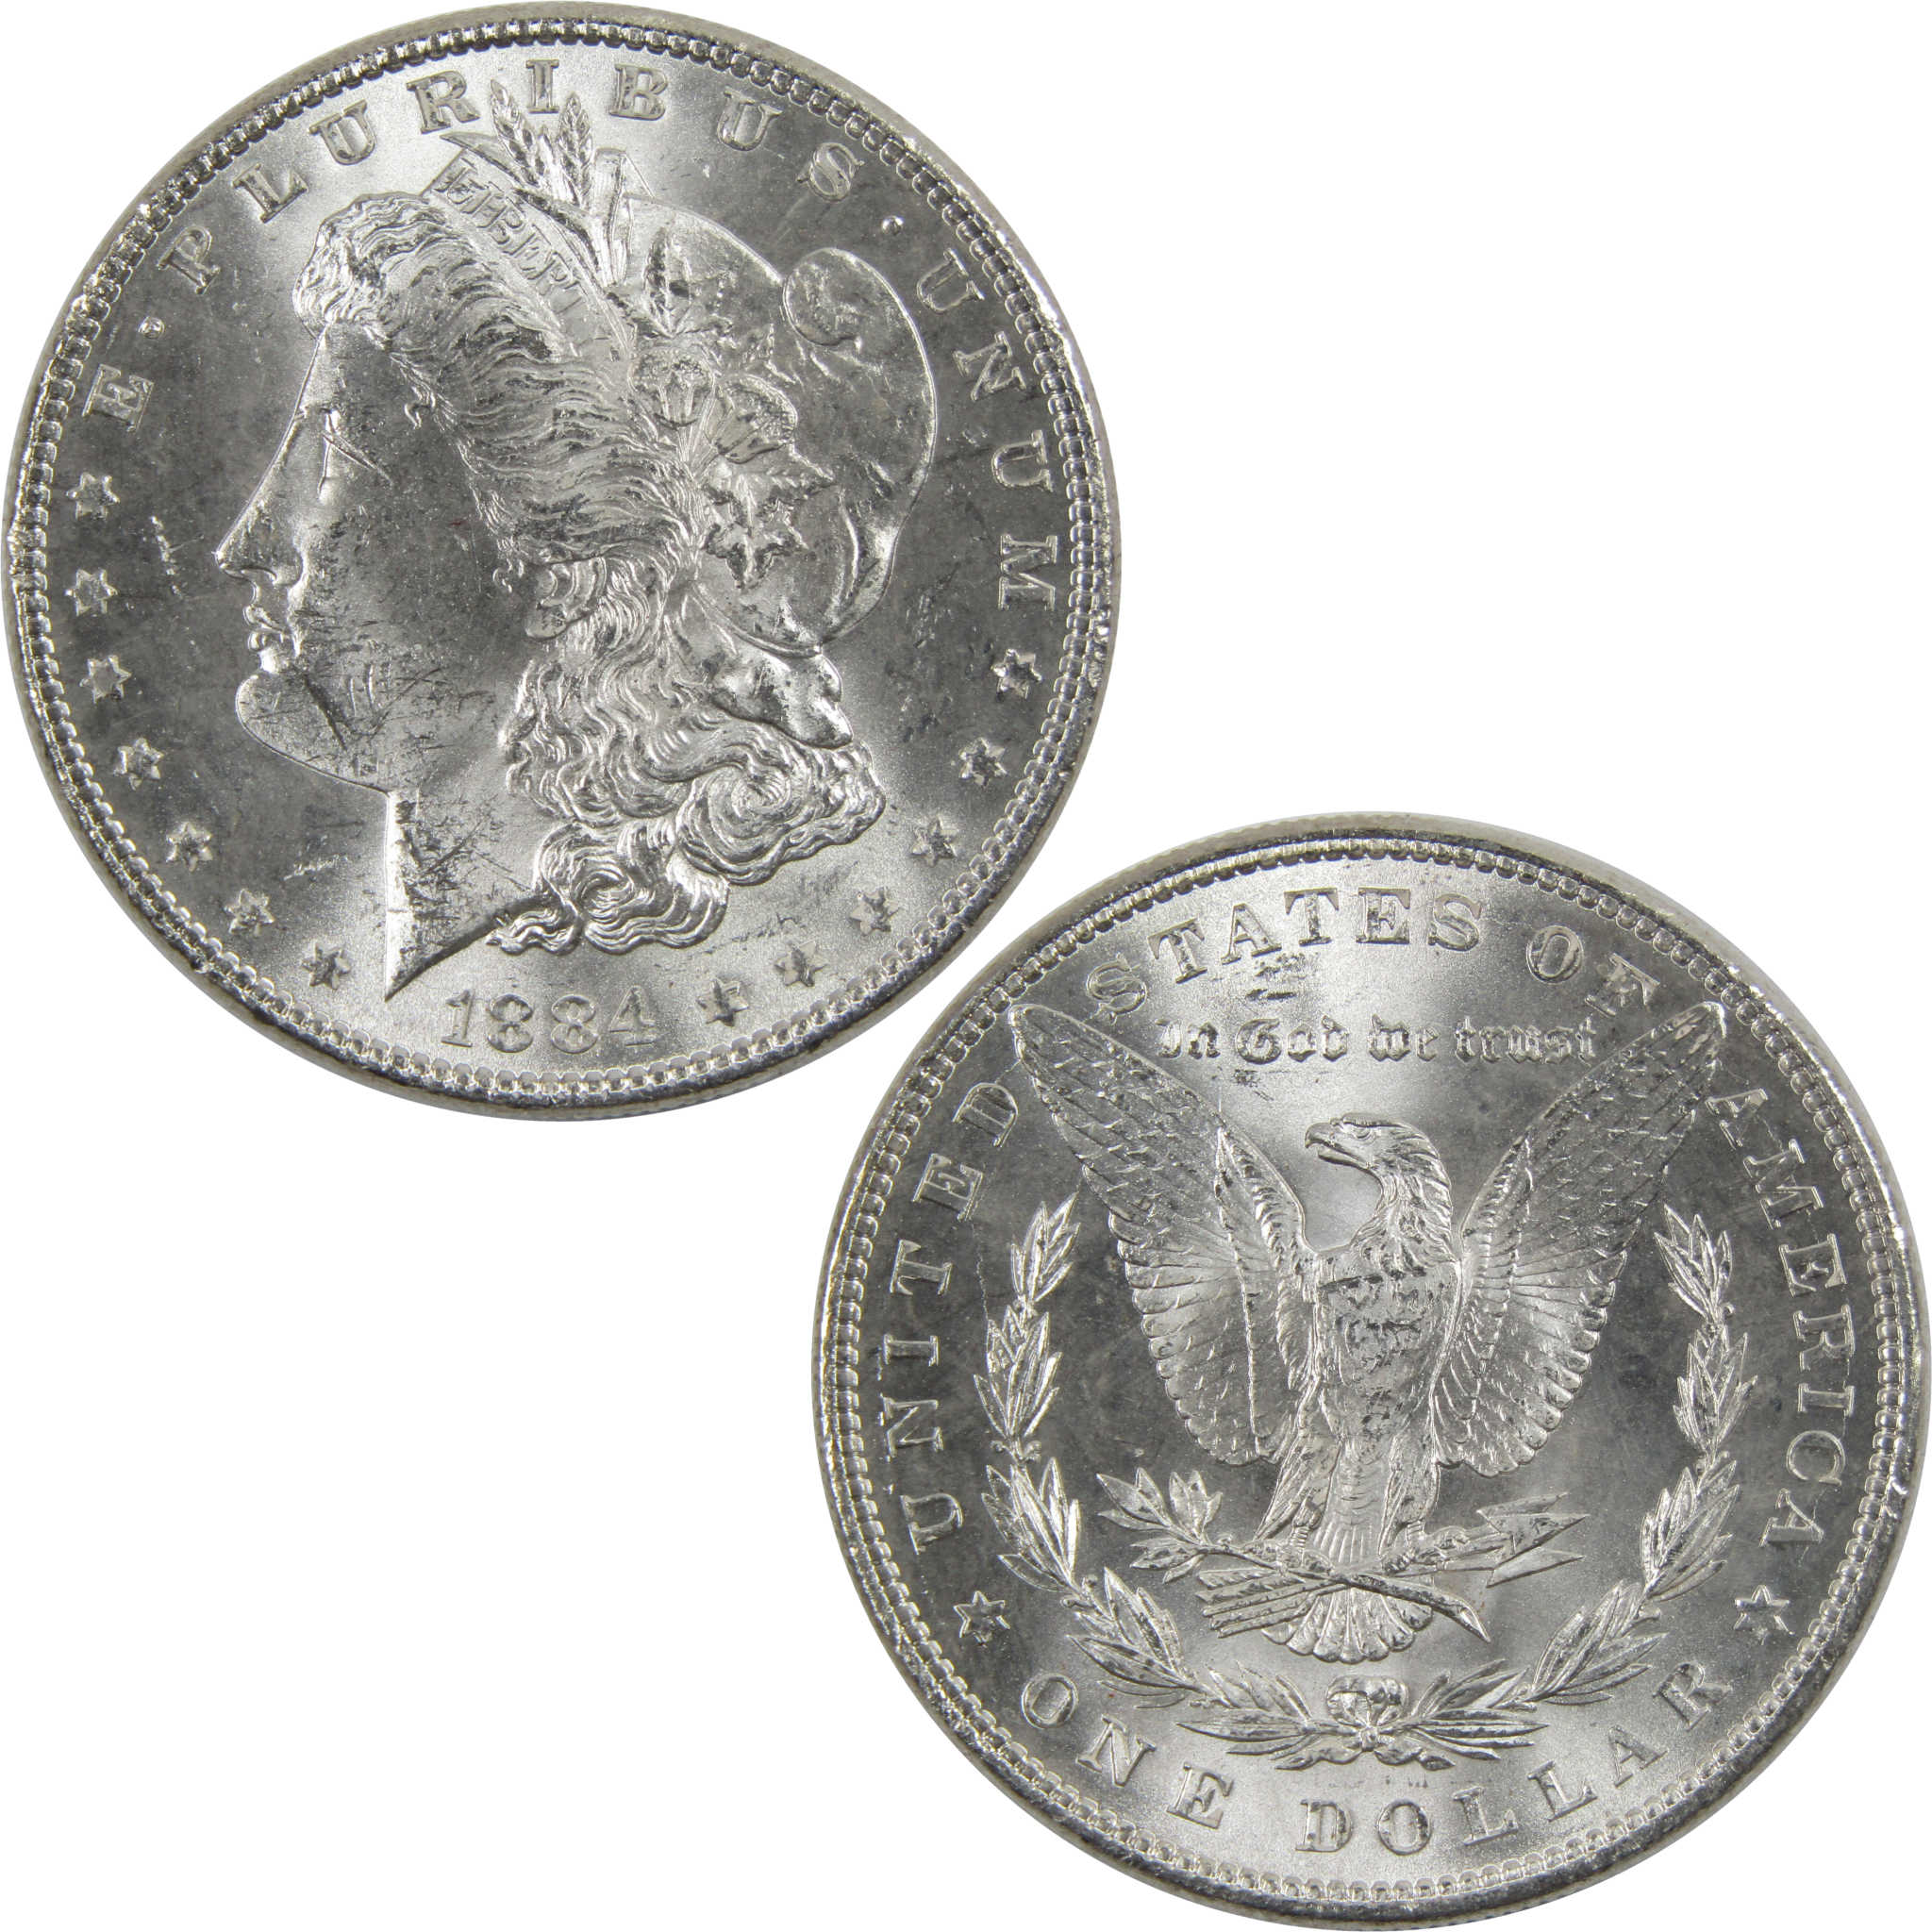 1884 Morgan Dollar BU Uncirculated 90% Silver $1 Coin SKU:I6011 - Morgan coin - Morgan silver dollar - Morgan silver dollar for sale - Profile Coins &amp; Collectibles